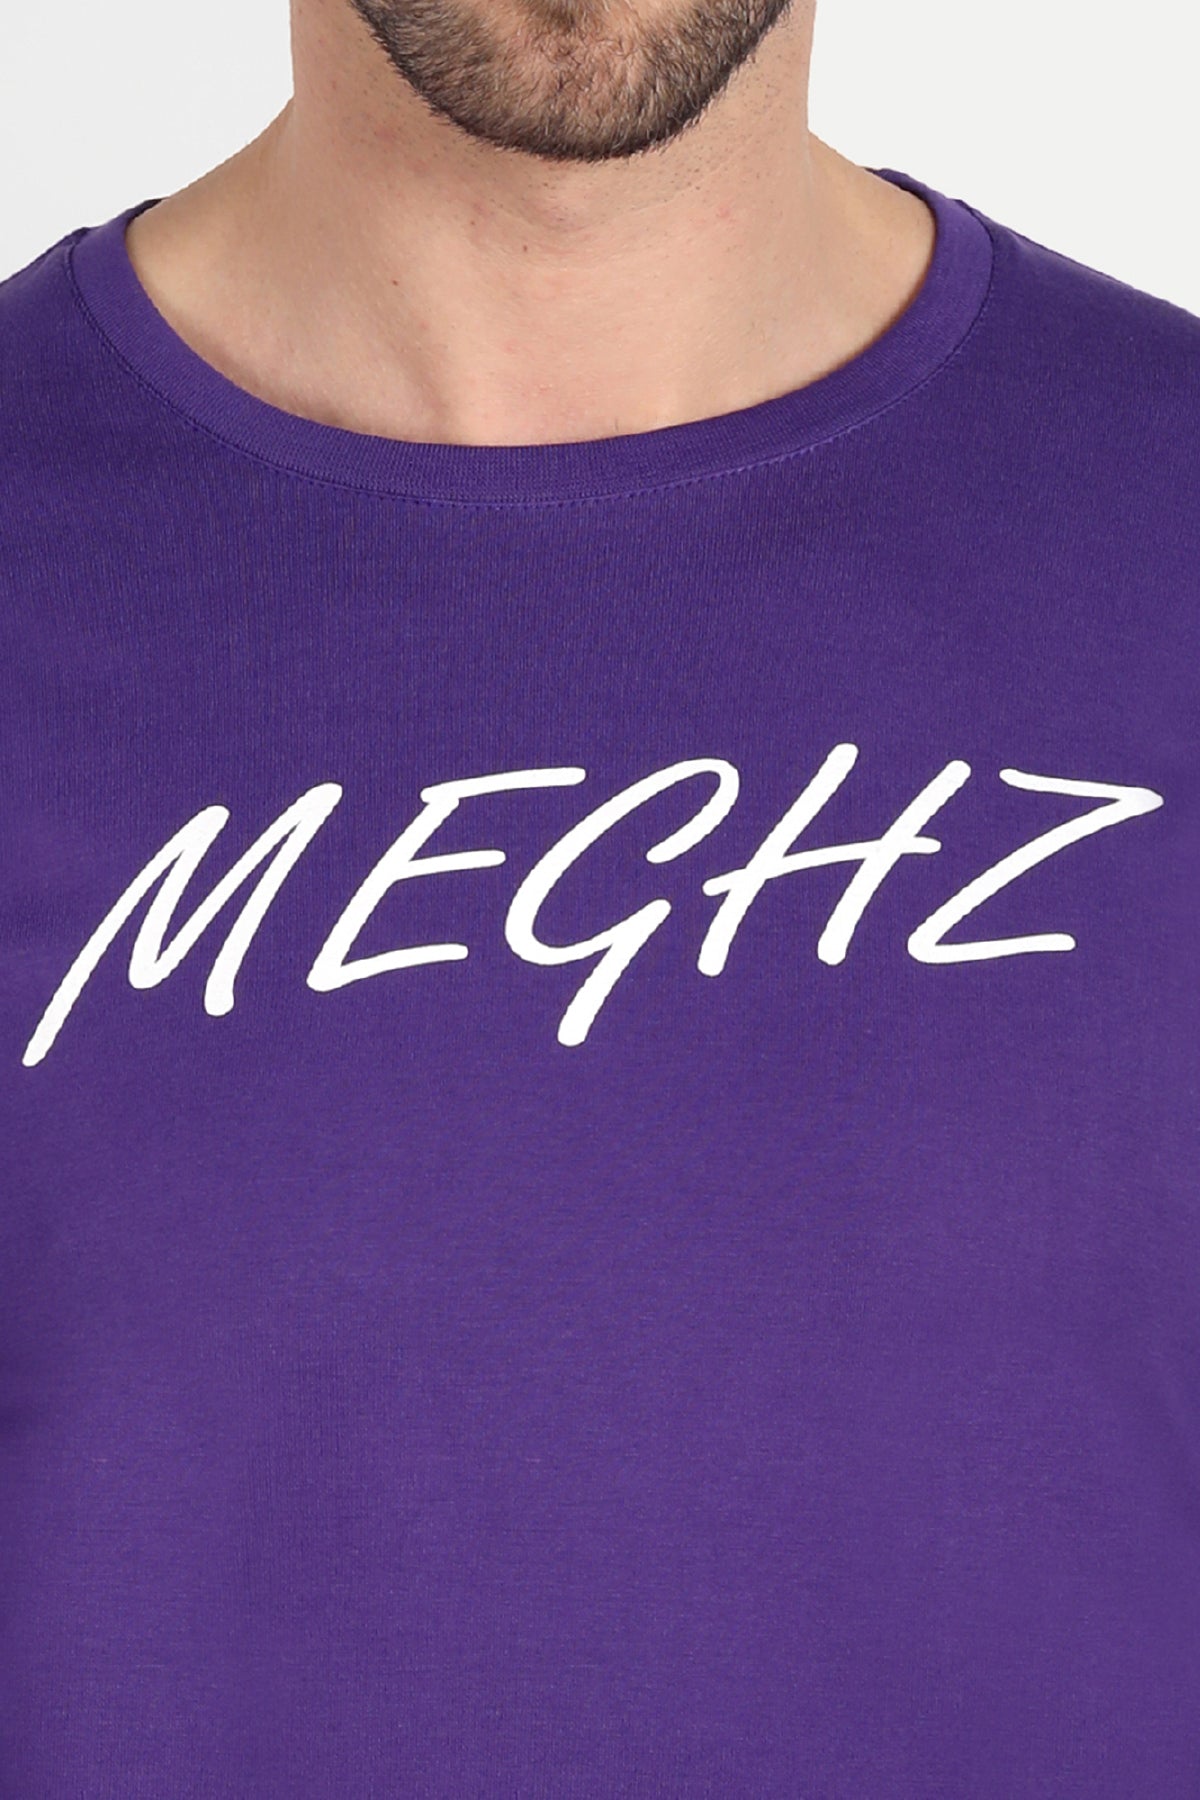 Men's Full Sleeve Purple T-Shirt